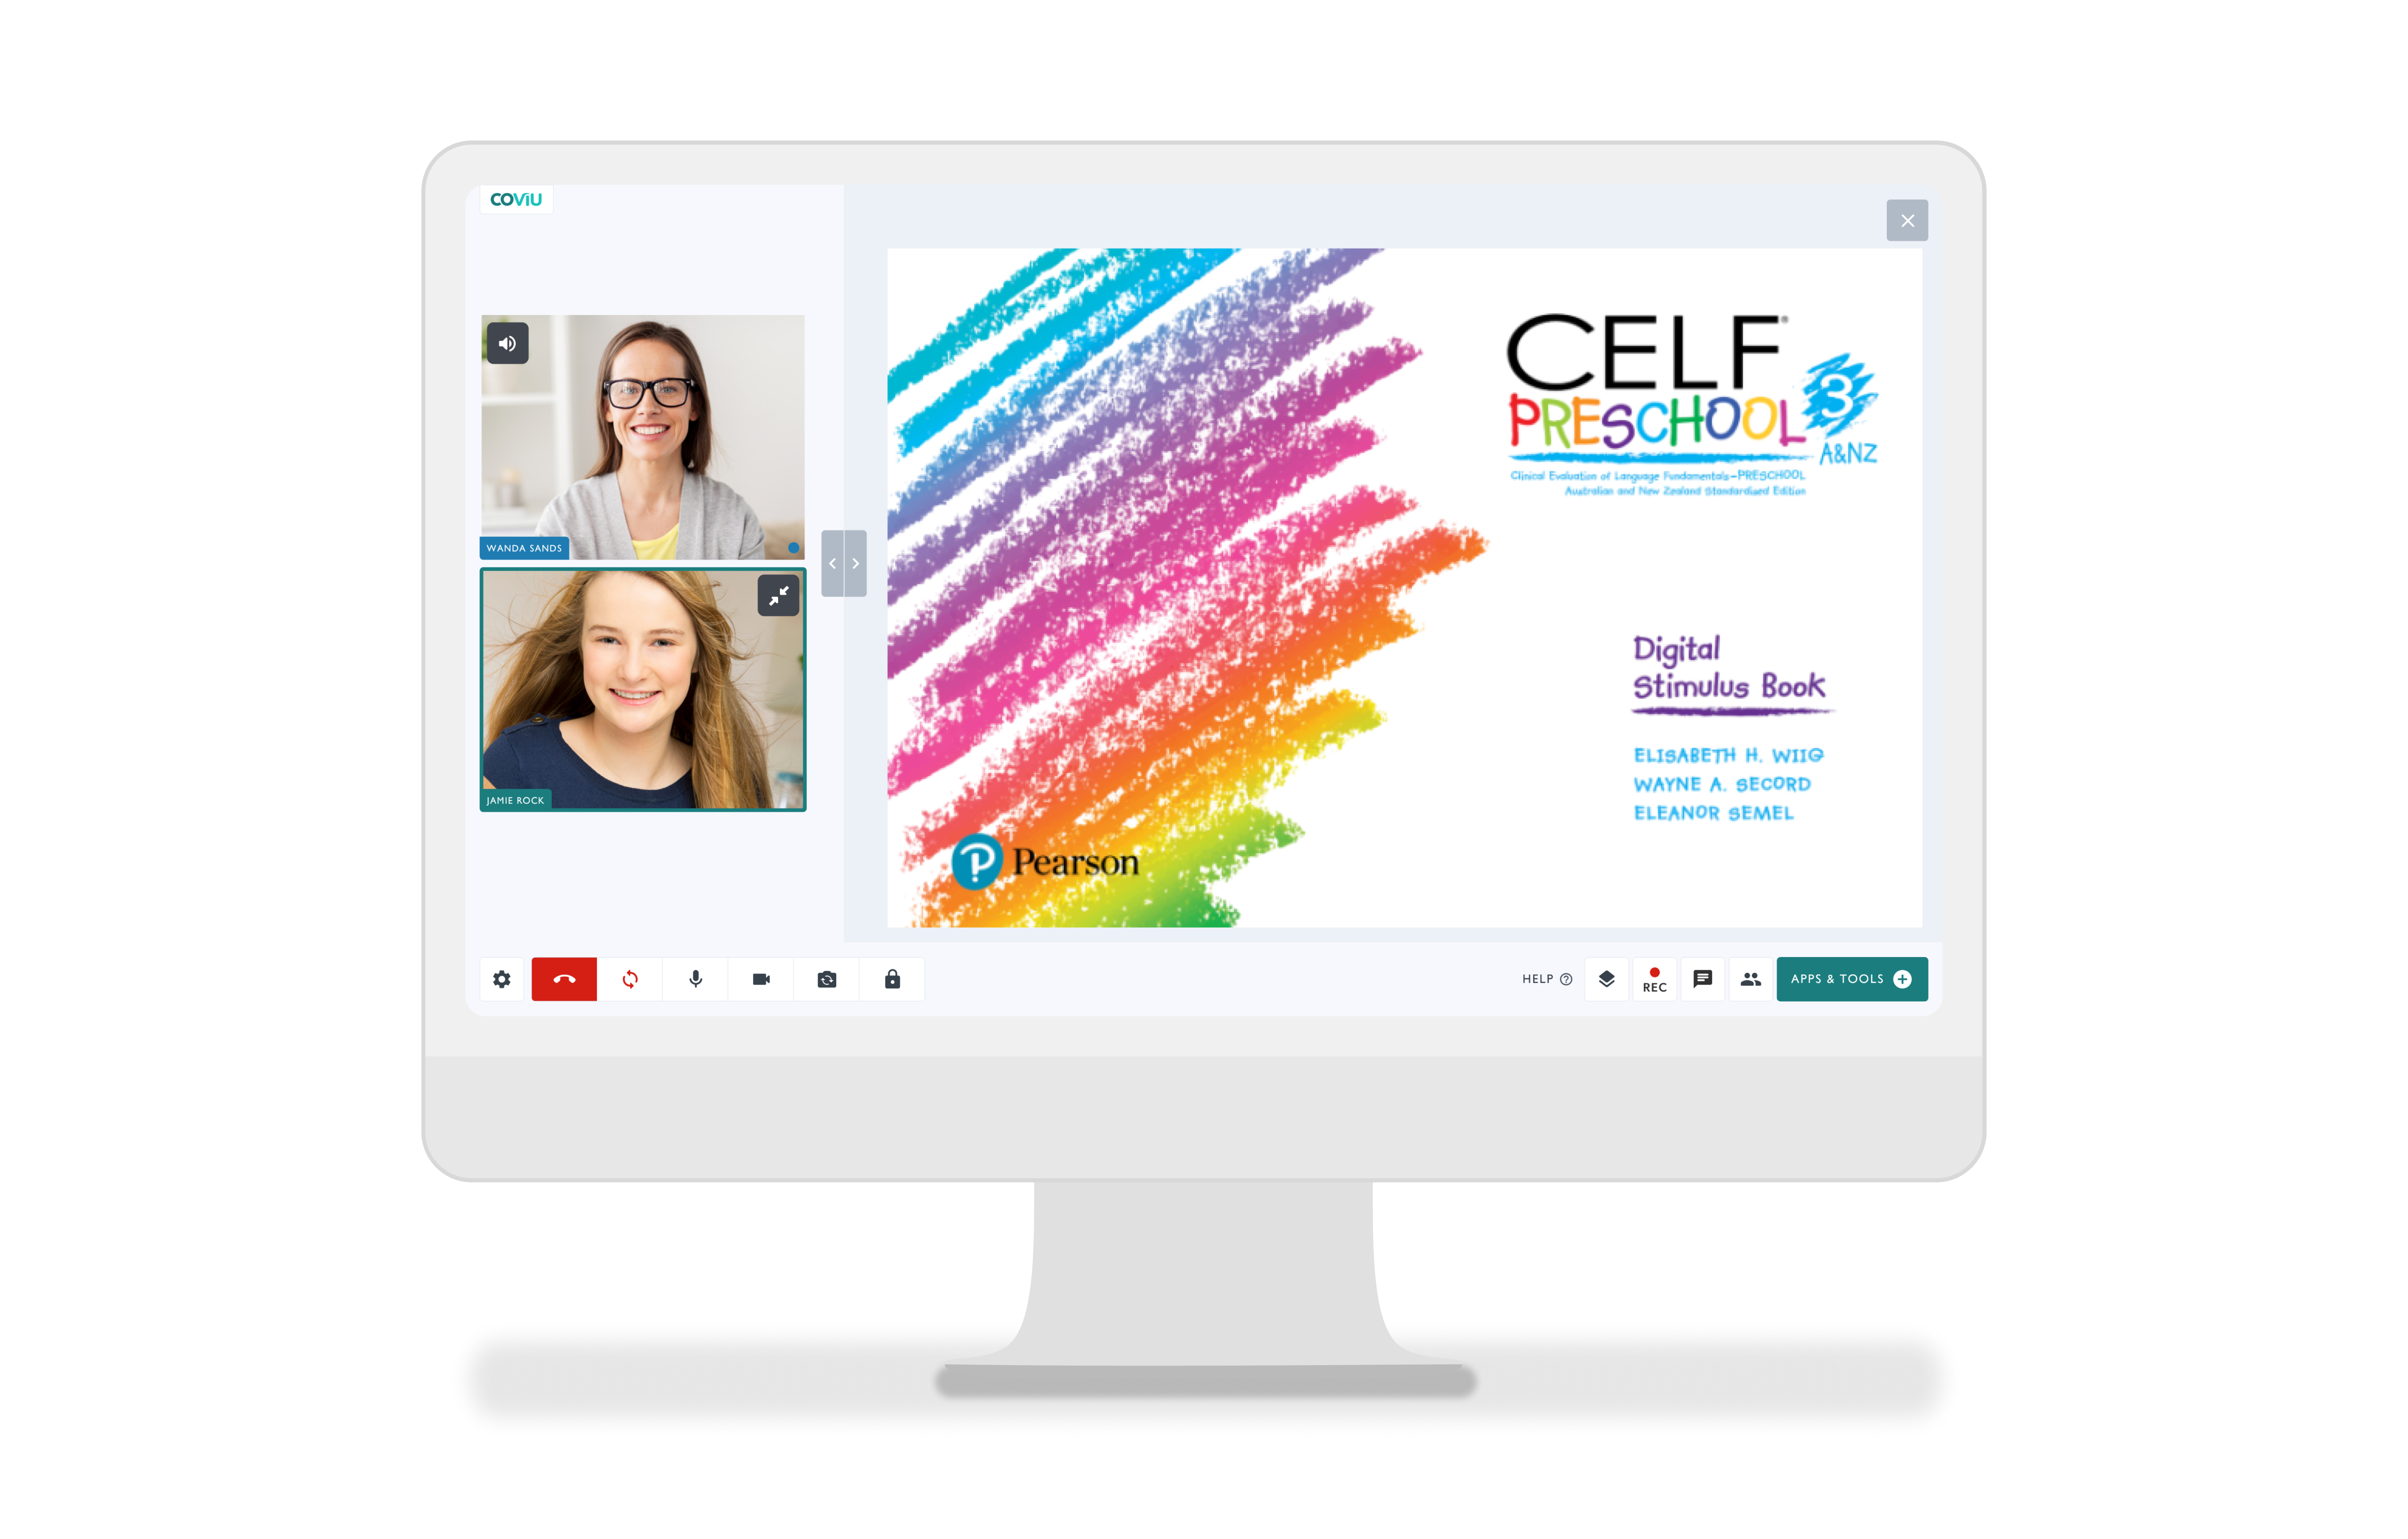 CELF Preschool-3 A&NZ